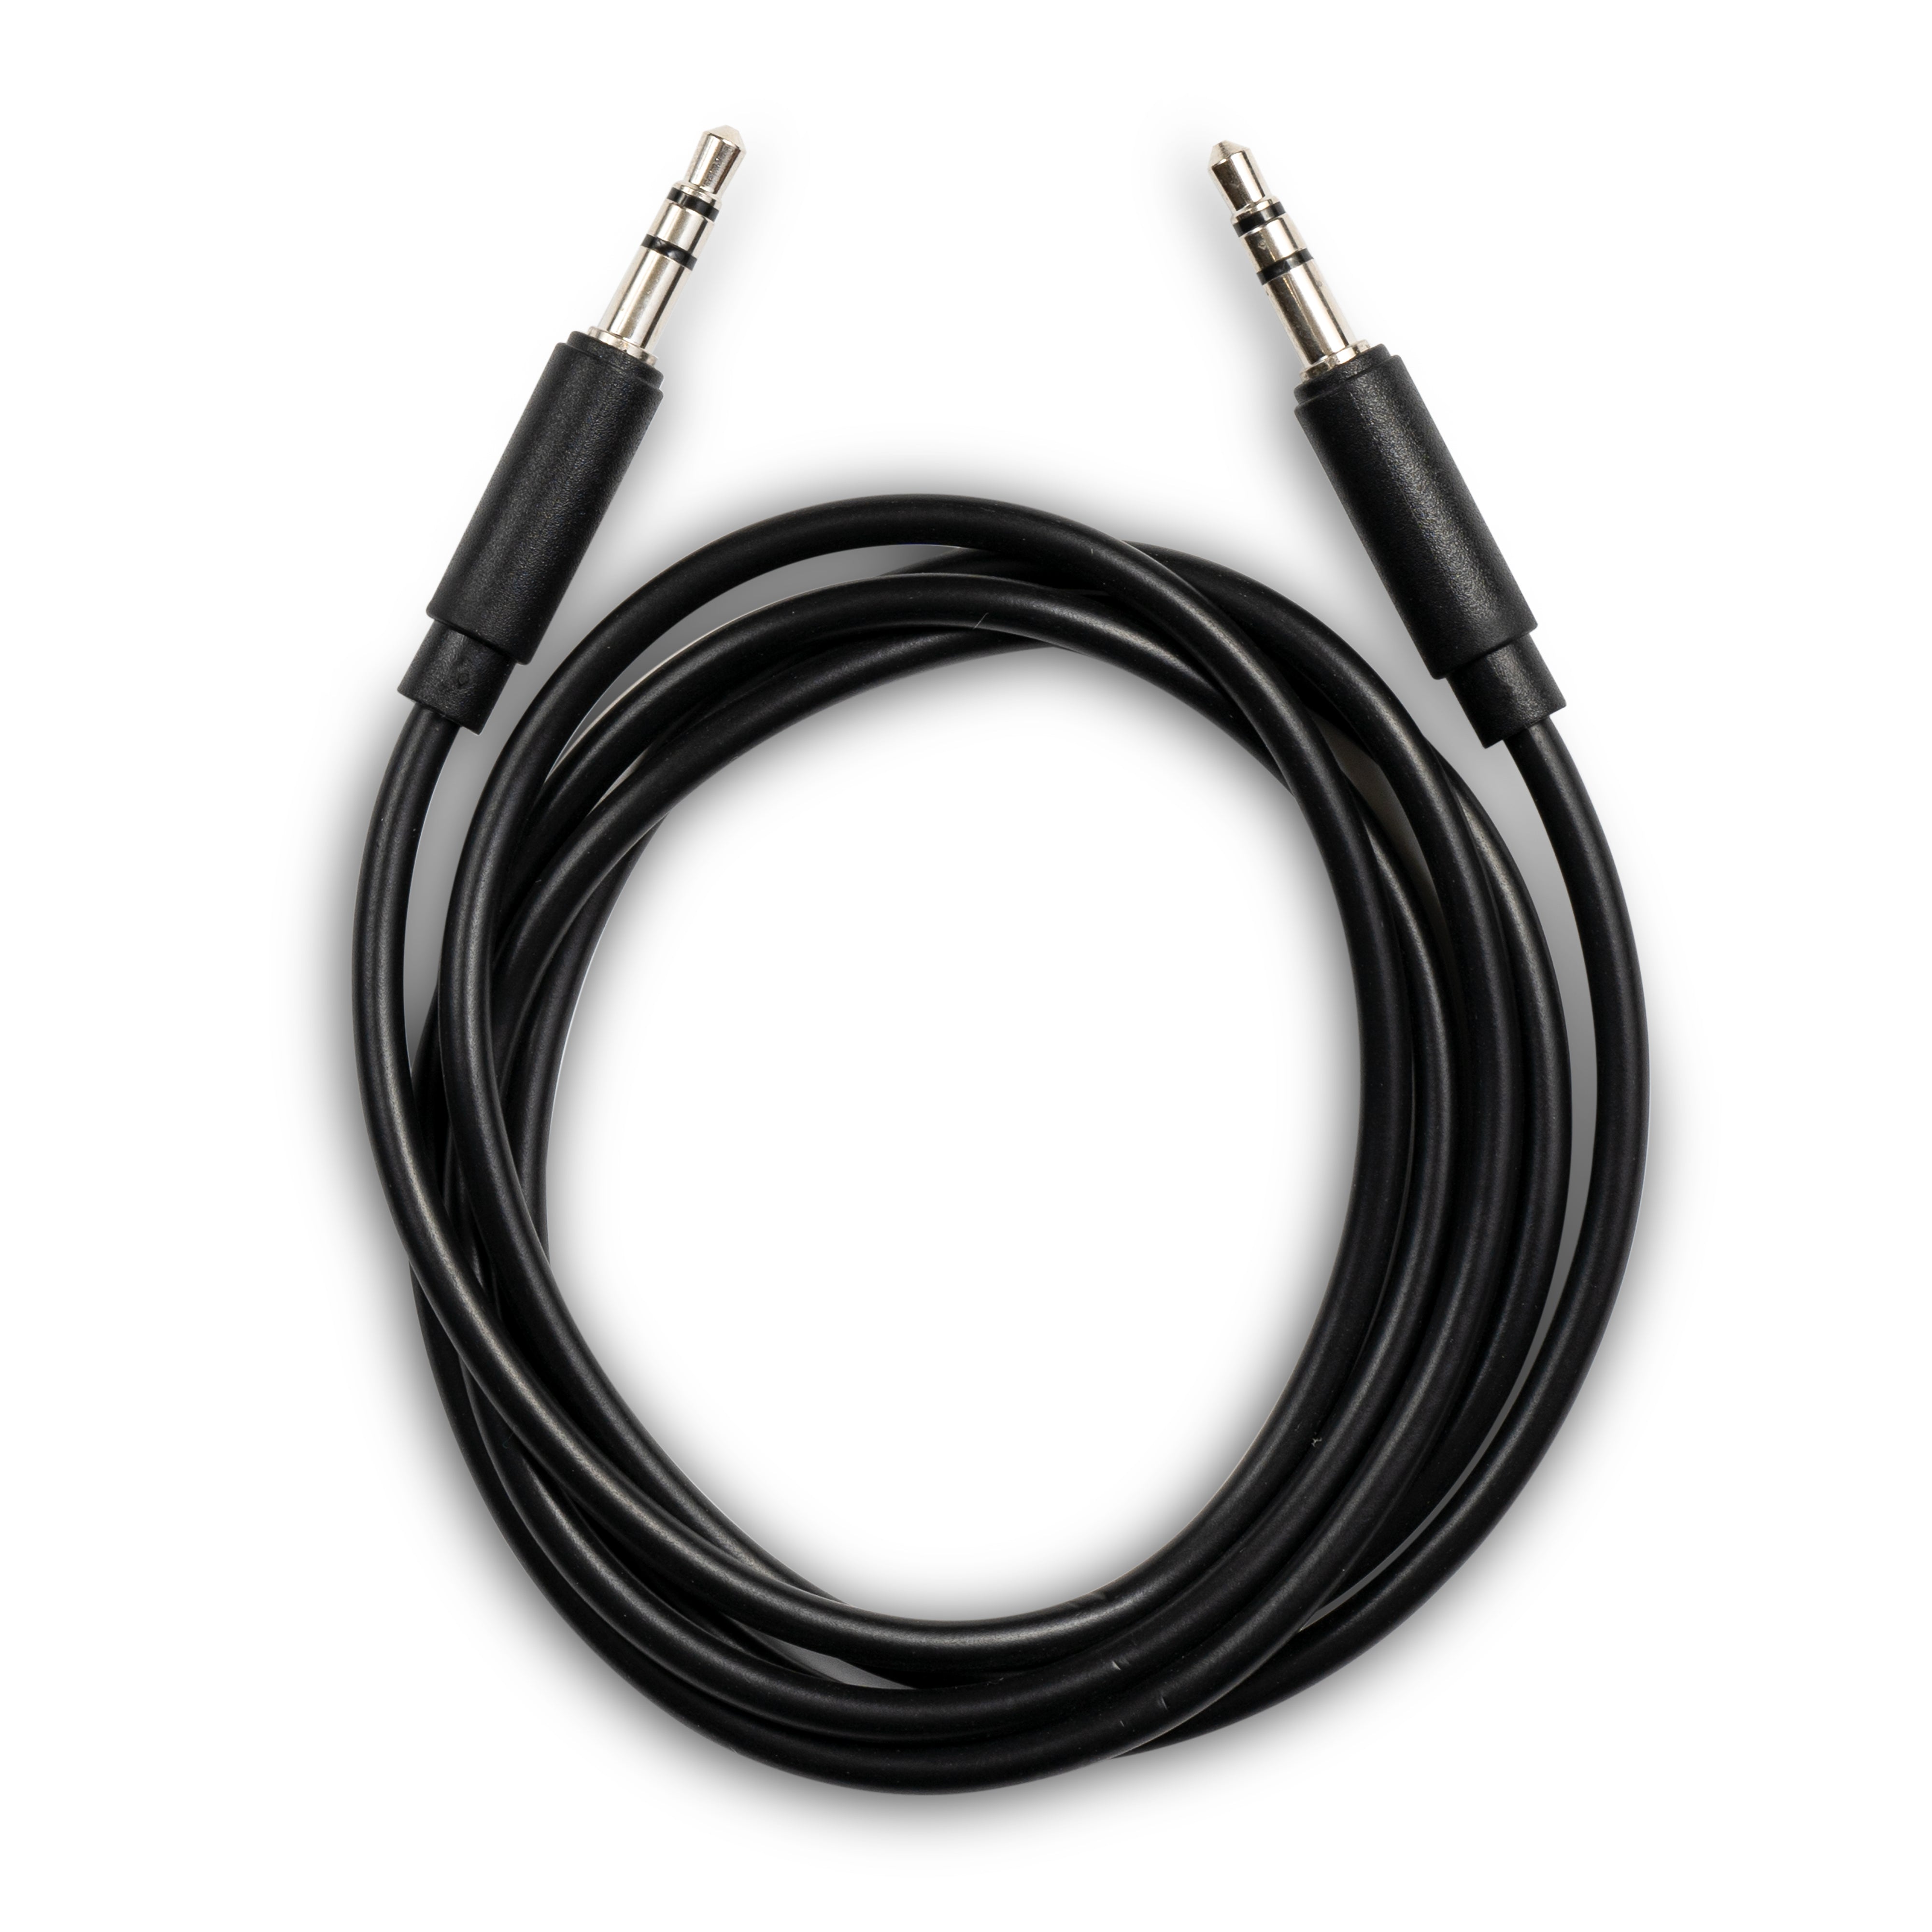     Black PVC 3ft Aux Cable